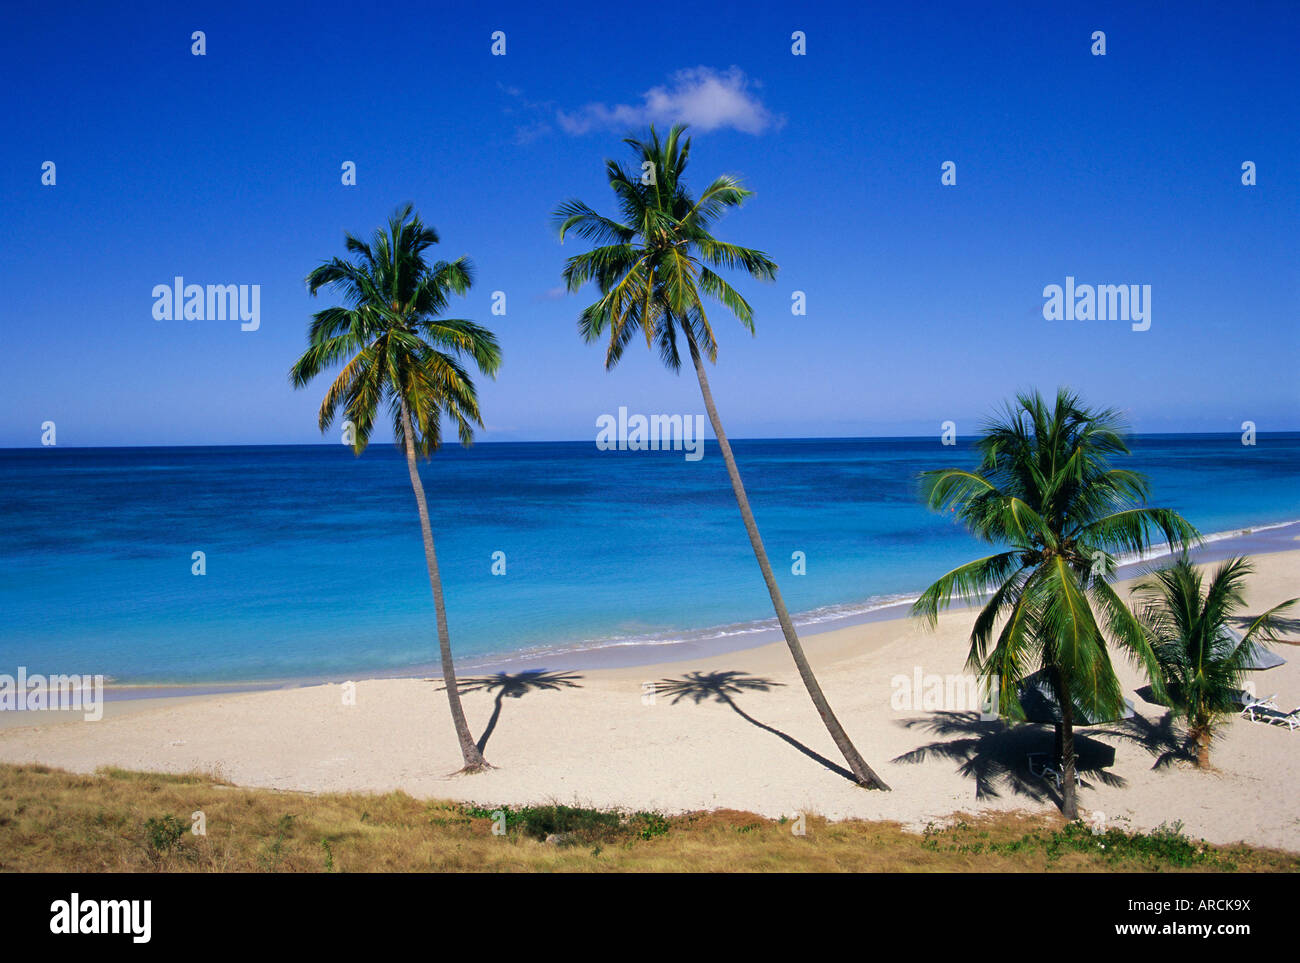 Palmiers sur la plage, Antigua, Caraïbes, Antilles, Amérique Centrale Banque D'Images